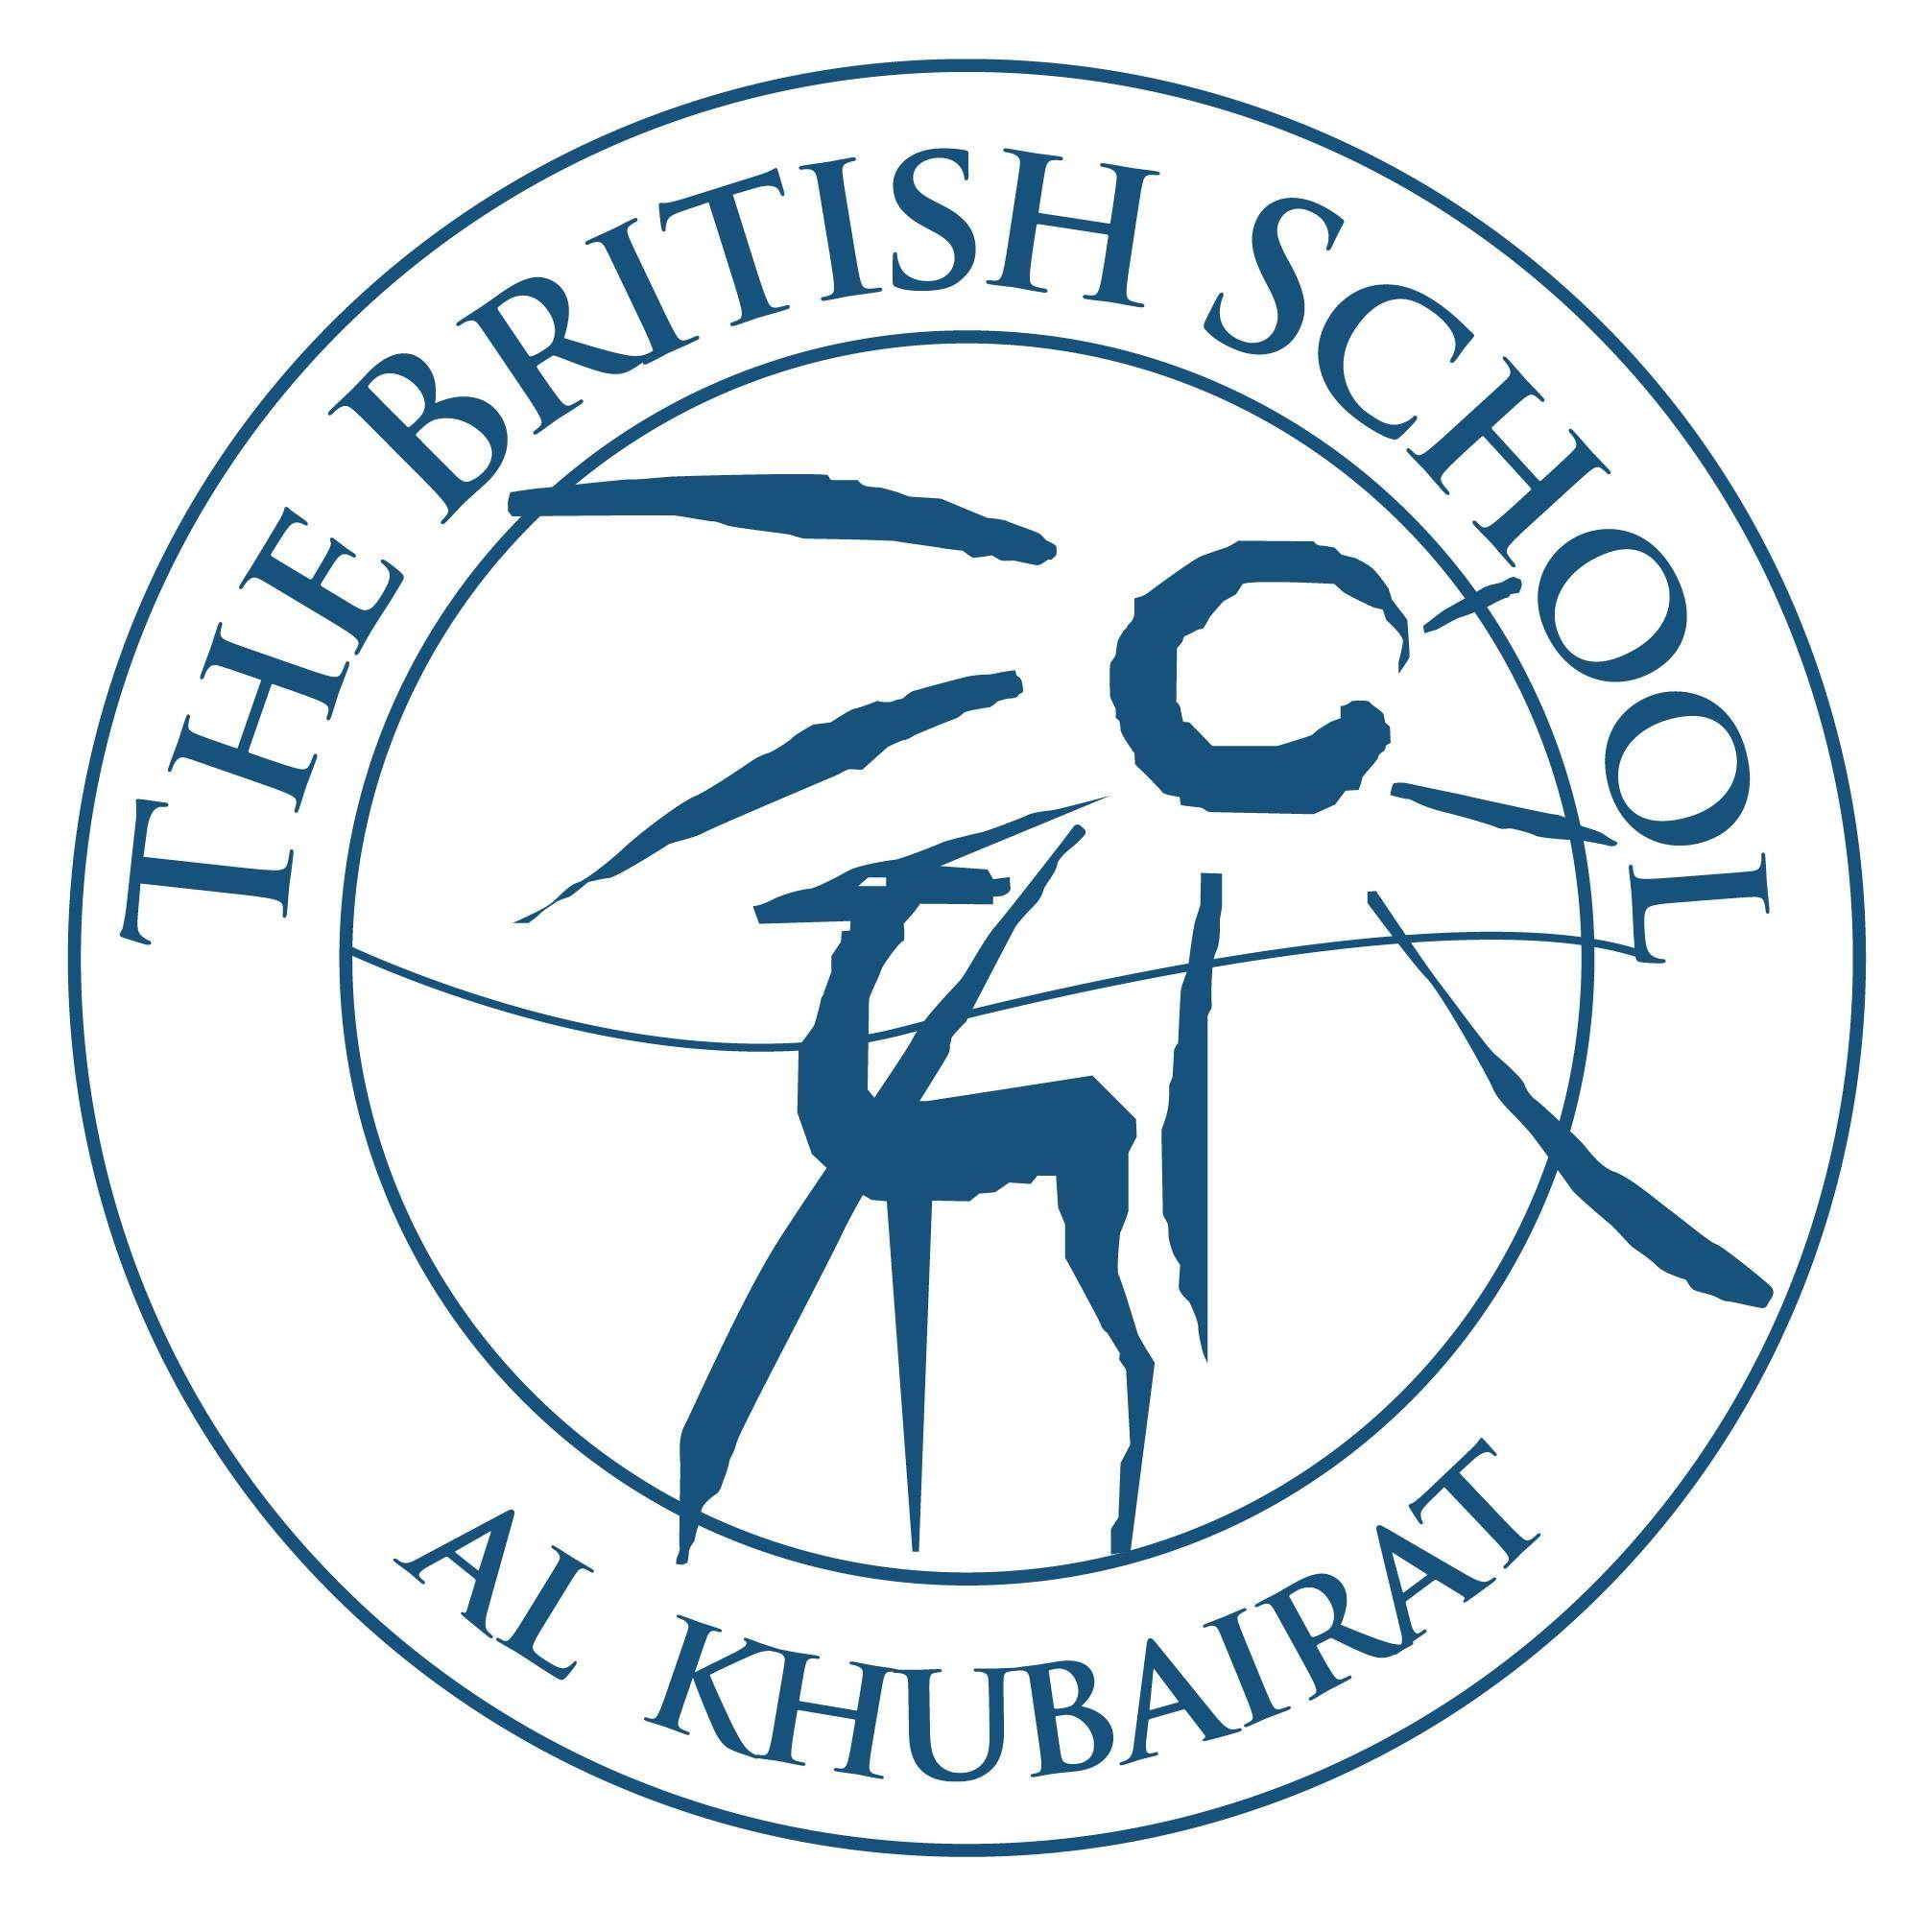 The British School Al Khubairat - Kindergarten